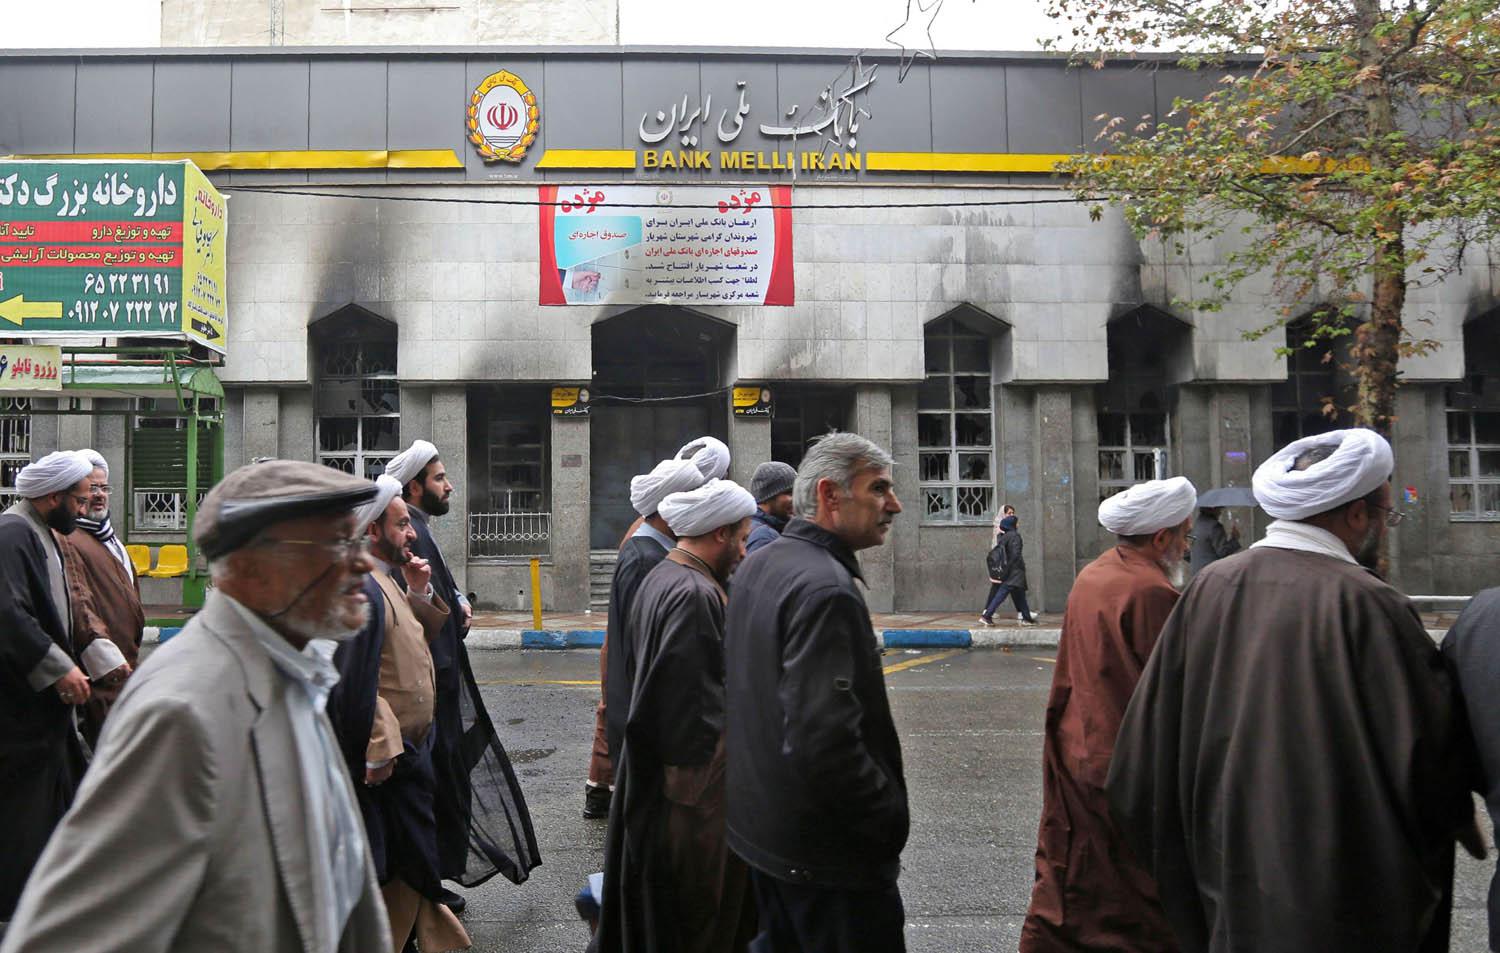 تظاهرة مؤيدة لخامنئي تتجول في مناطق الاضطرابات في طهران